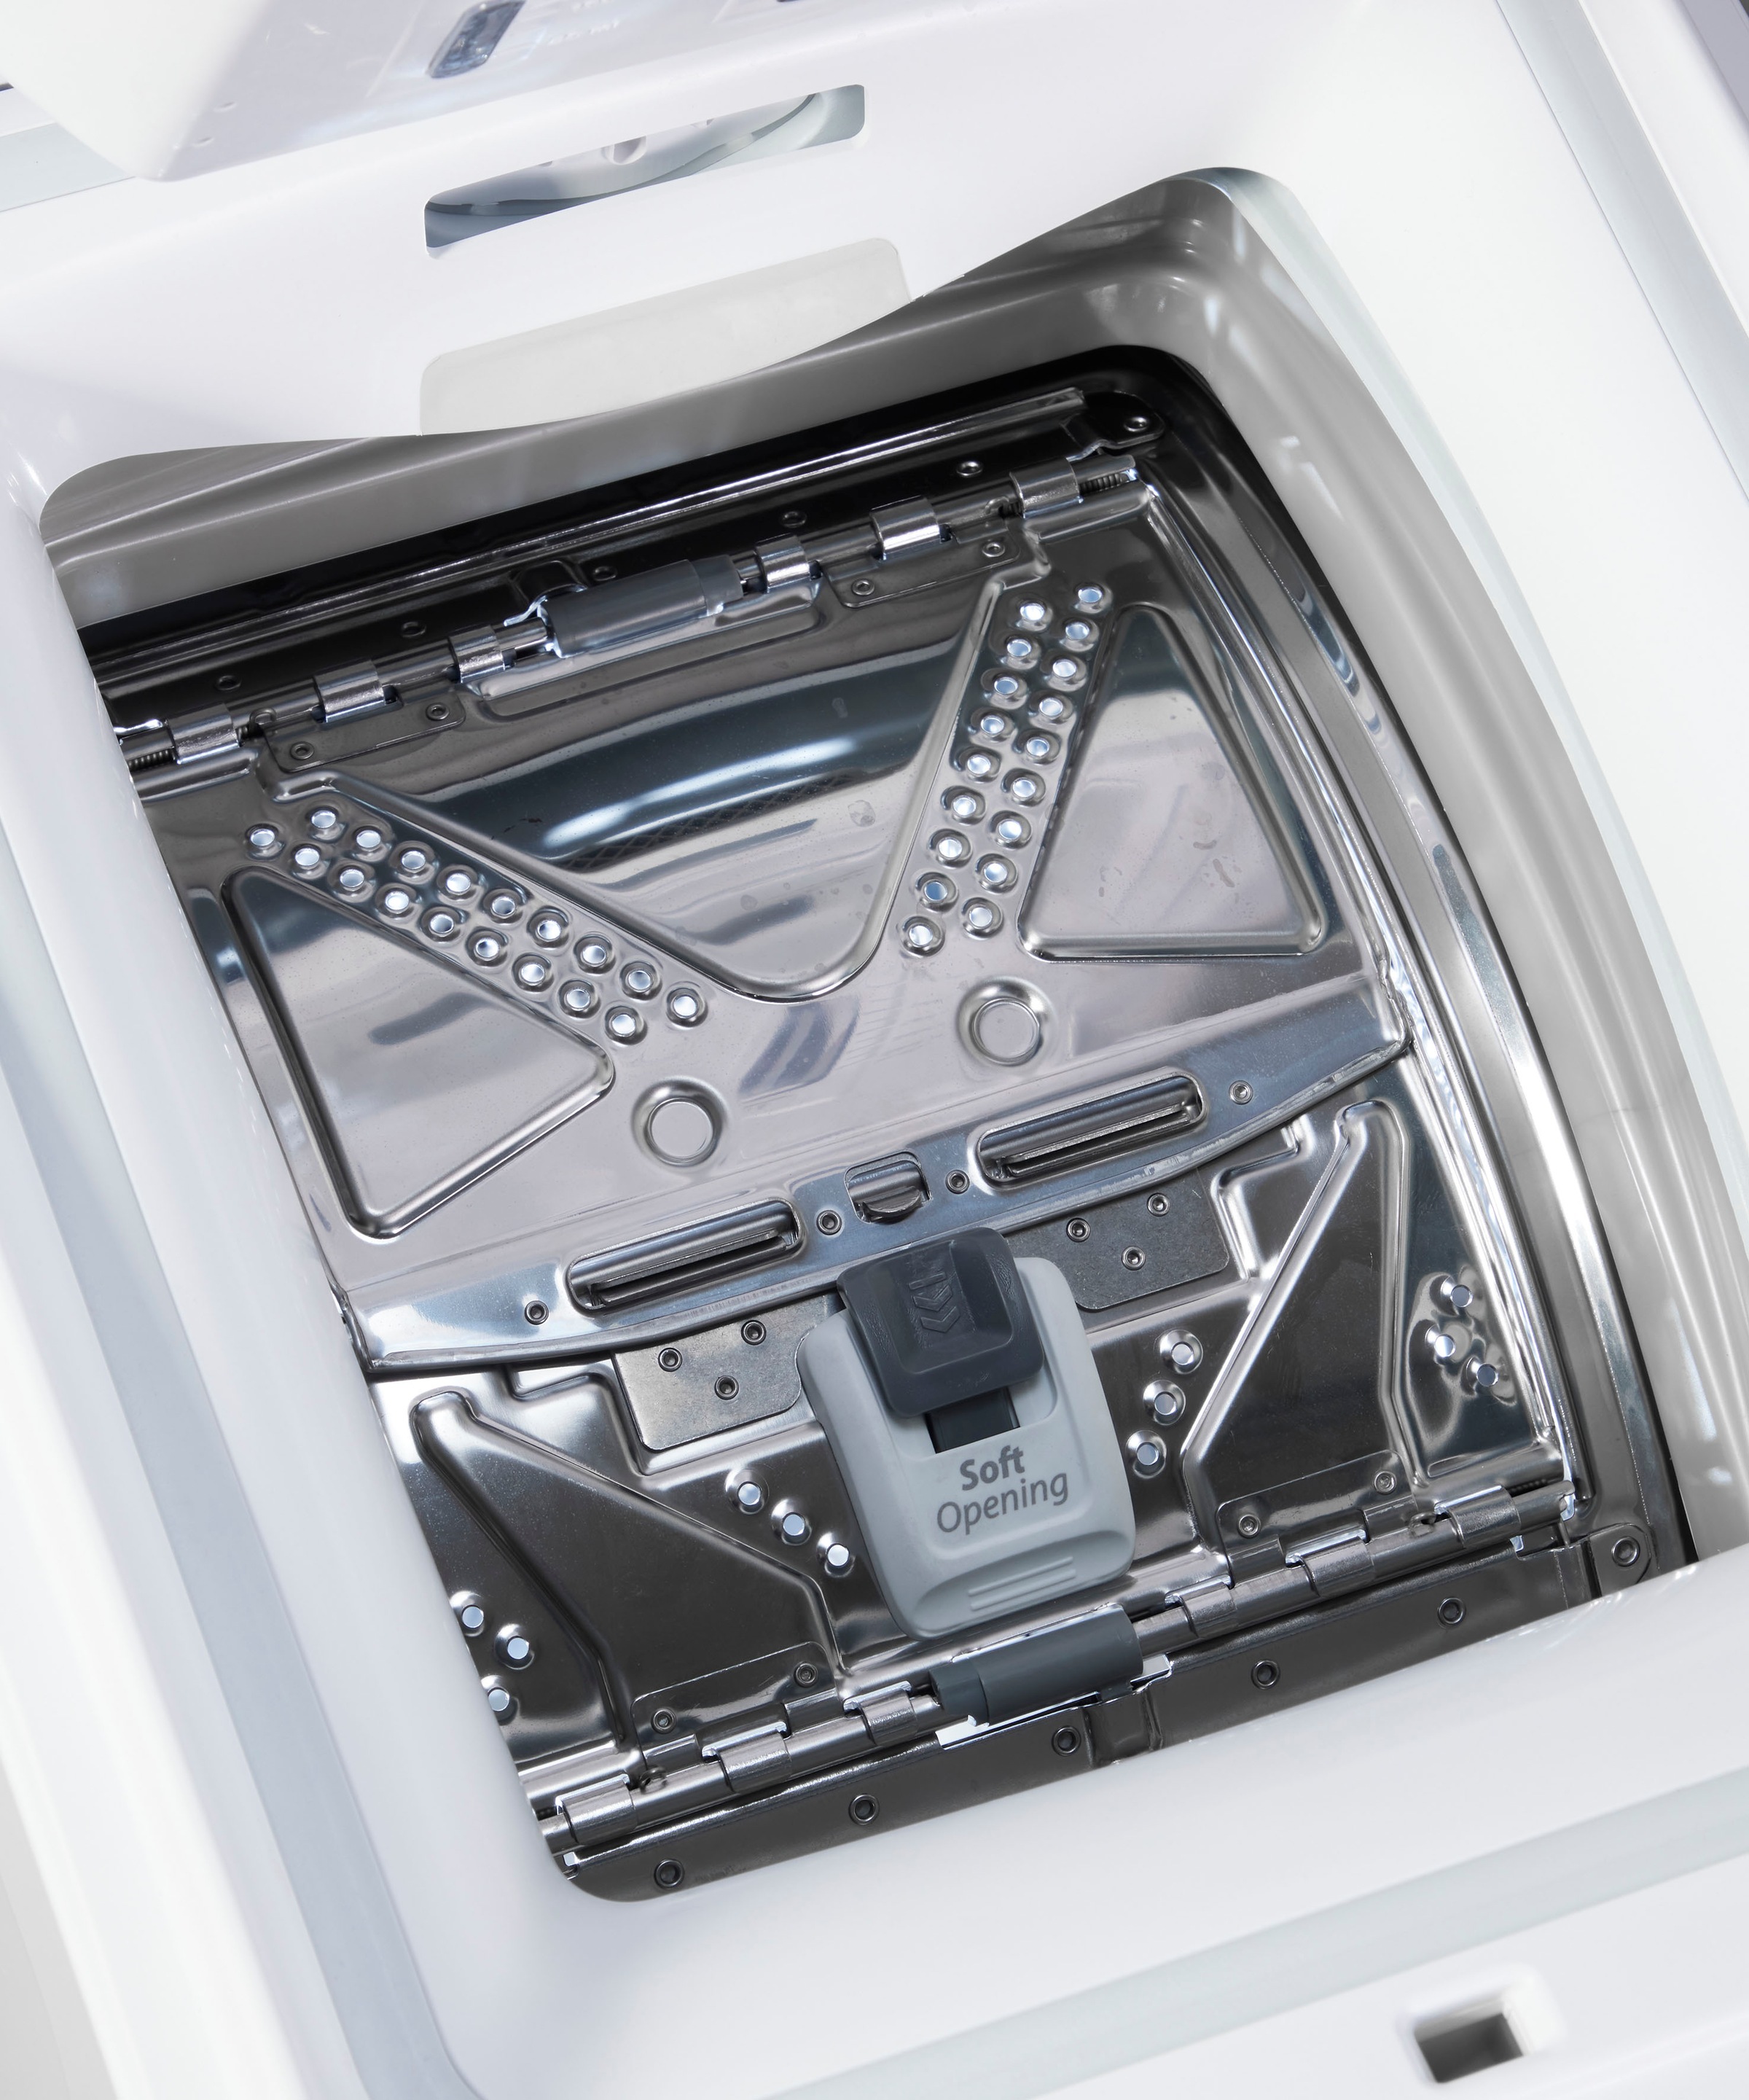 Privileg Waschmaschine Toplader »PWT Class B6 S5 N«, PWT Class B6 S5 N, 6 kg, 1200 U/min